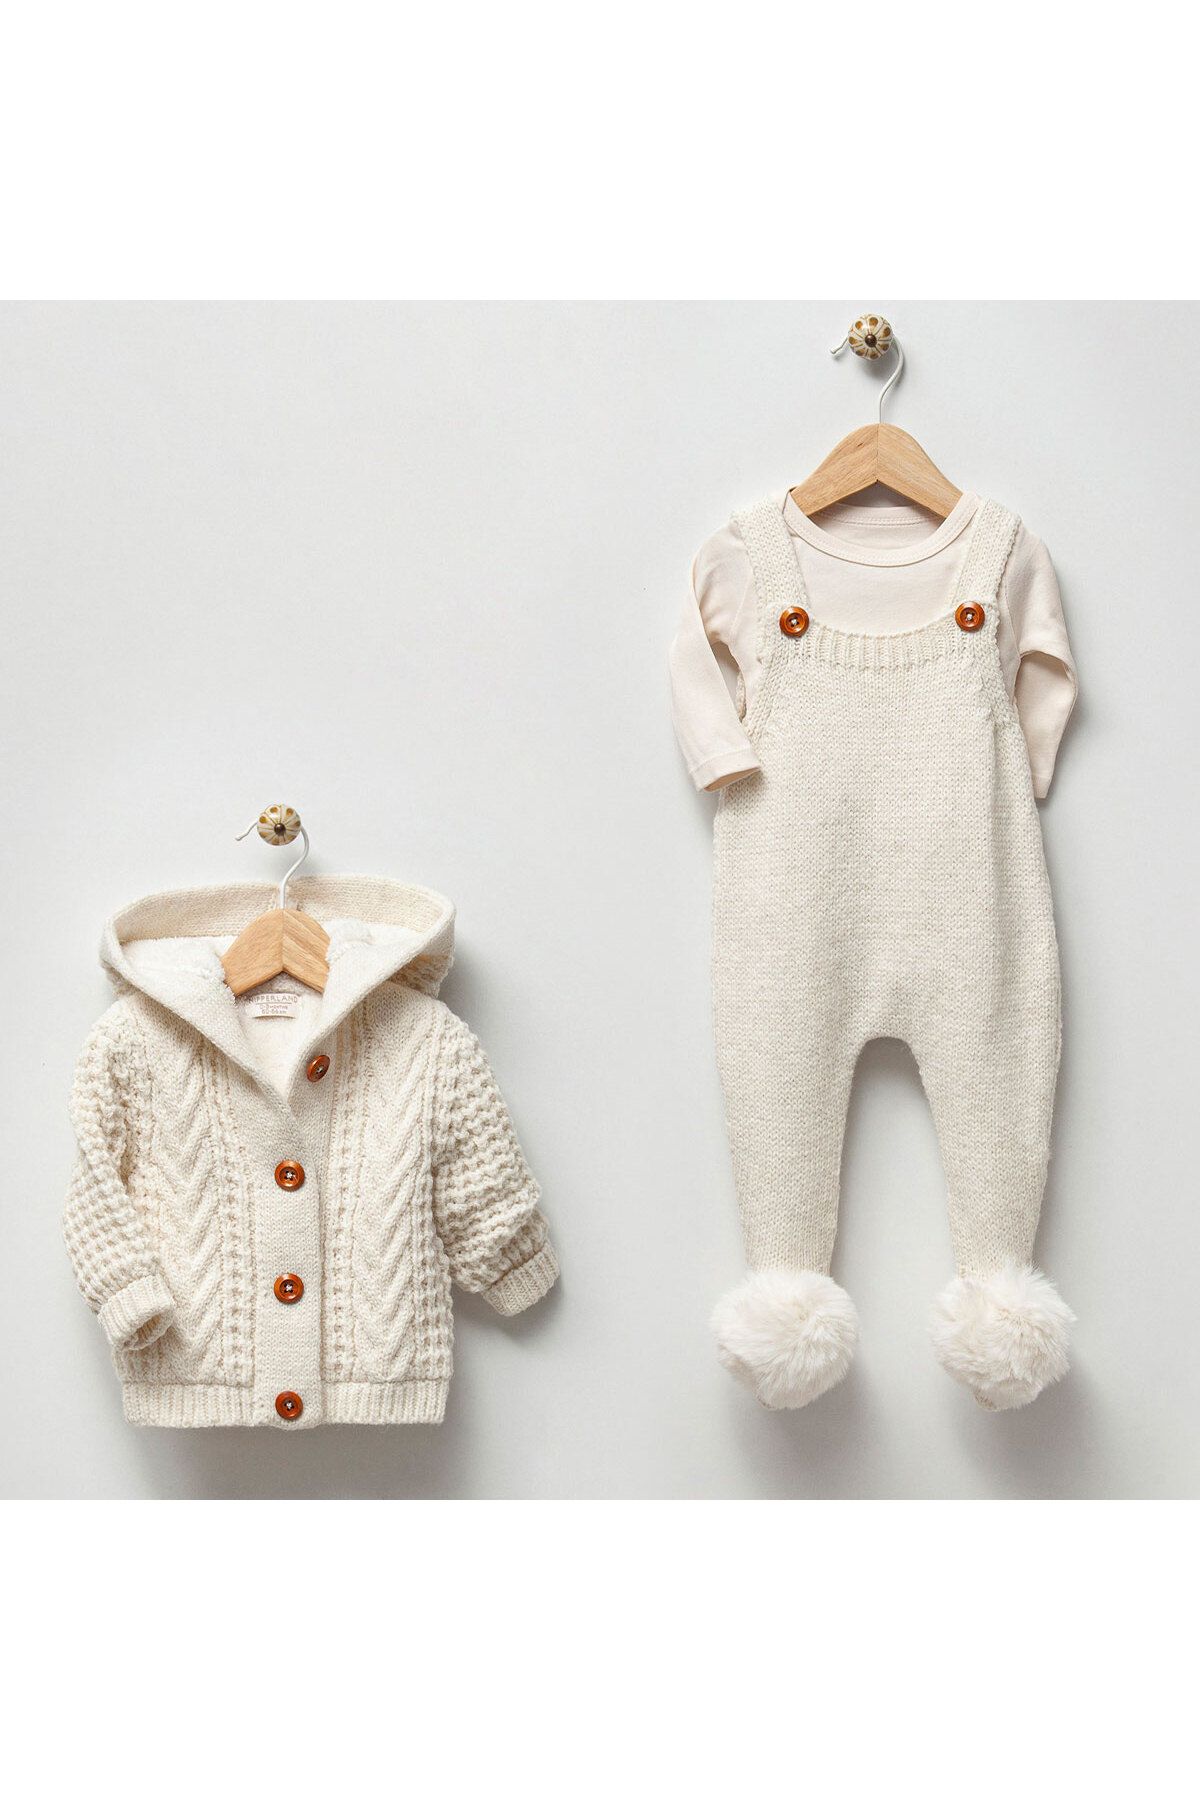 DIDuStore Nipperland Unisex Organik Bebek Giyim Seti Rahatlık ve Sıcaklık İçin Doğal Seçim